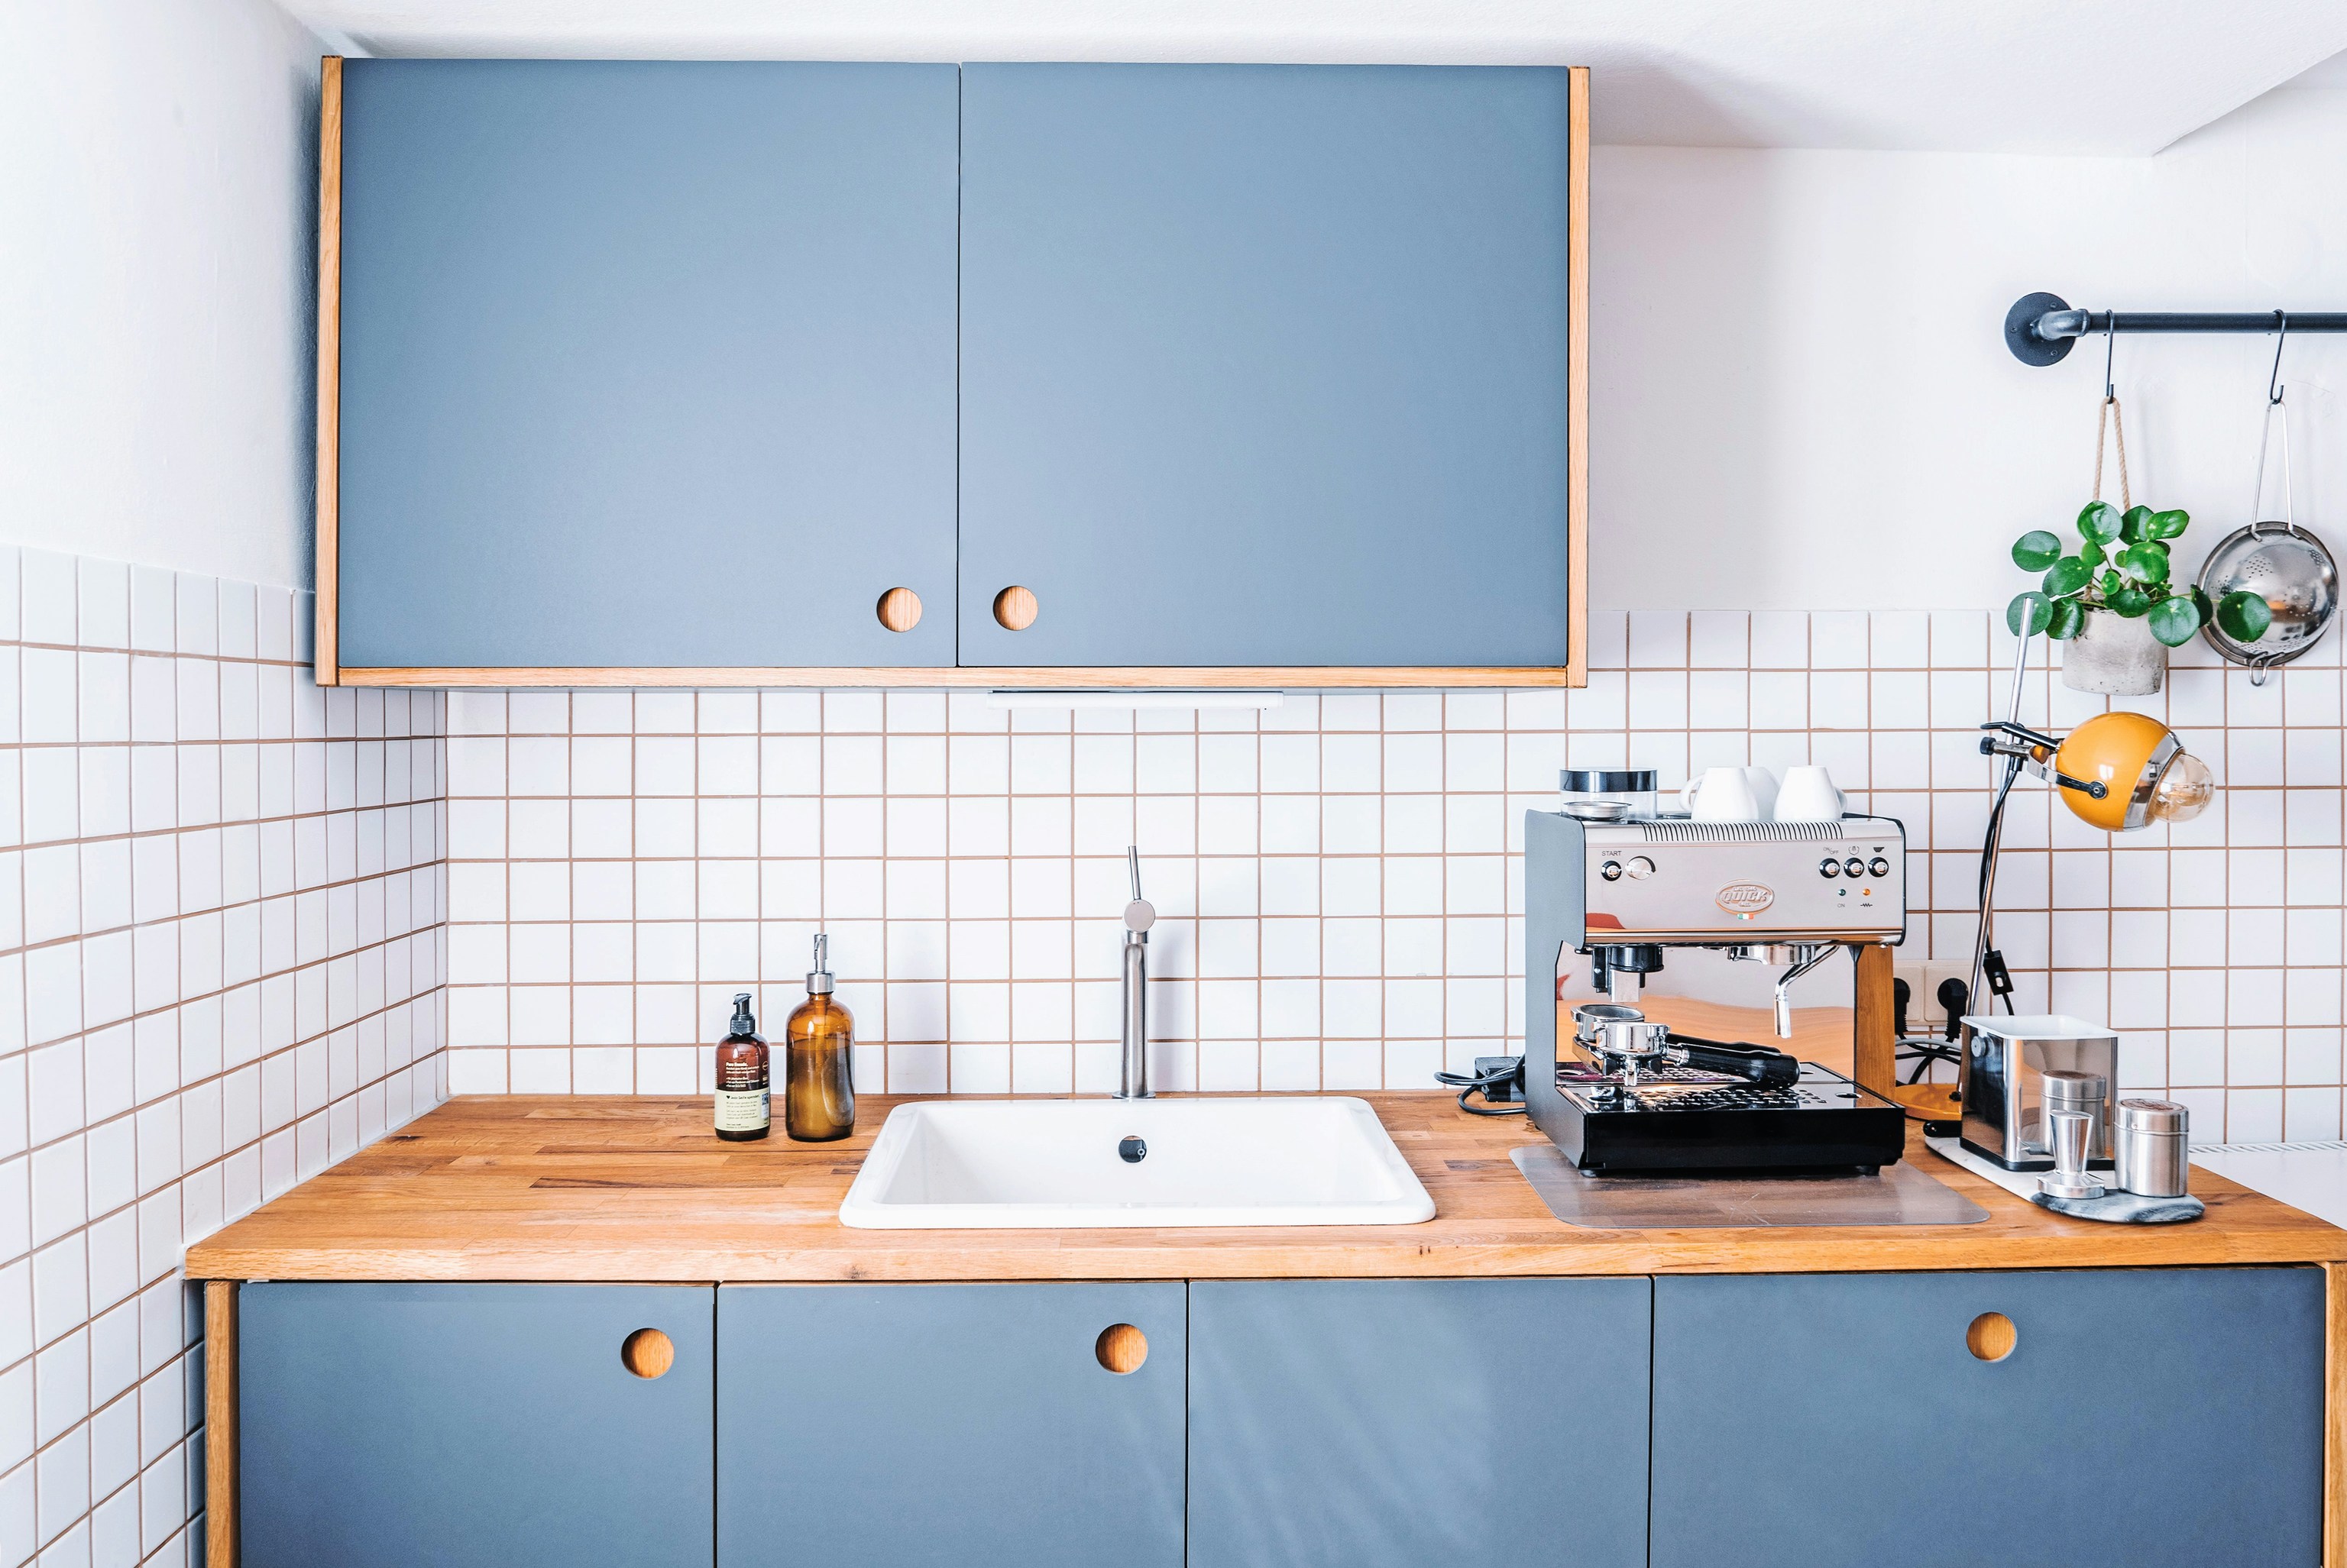 Decorar la cocina con un toque moderno: guarda productos de limpieza